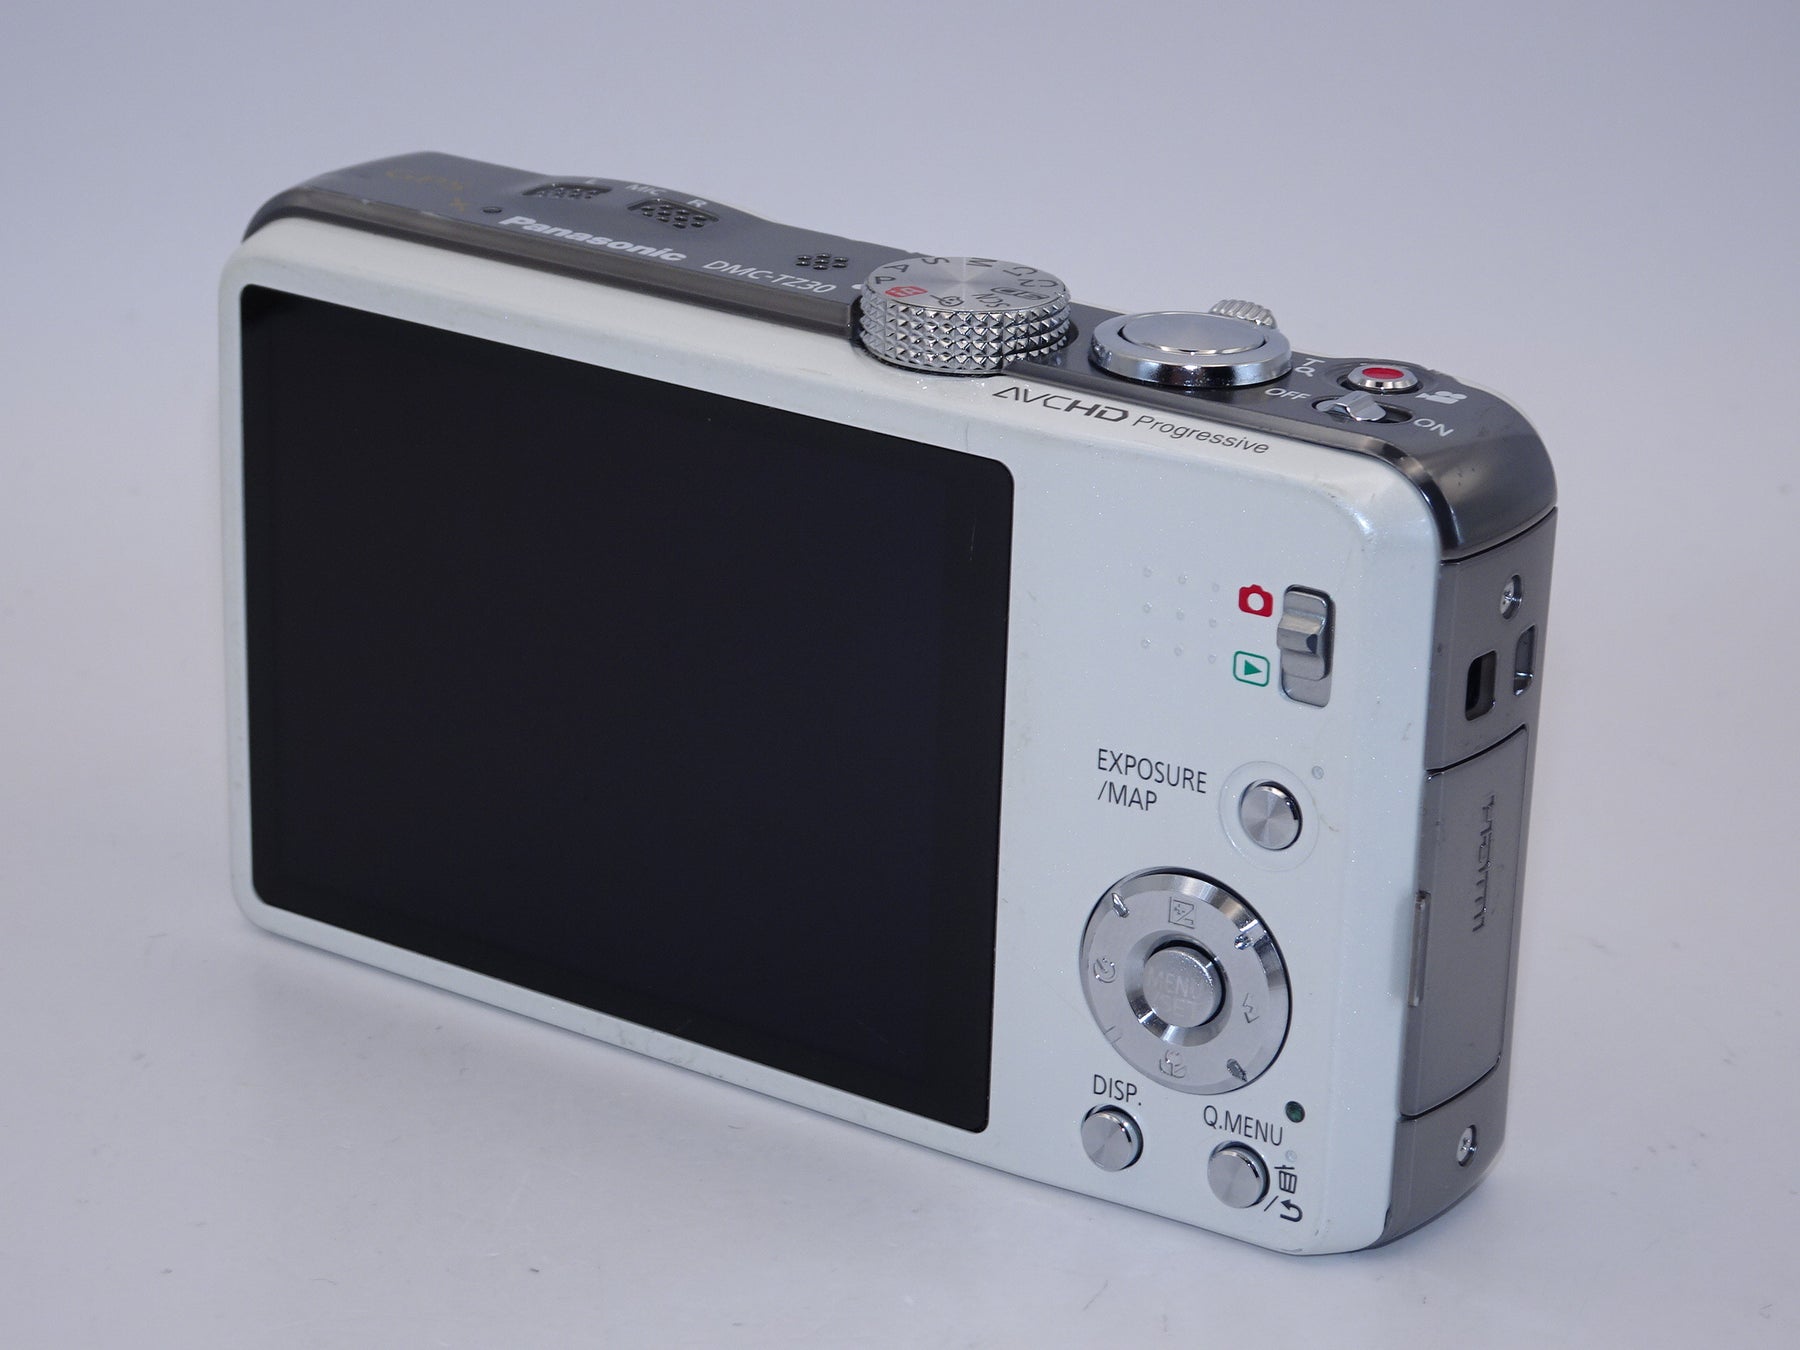 【外観並級】パナソニック デジタルカメラ ルミックス TZ30 ホワイト DMC-TZ30-W